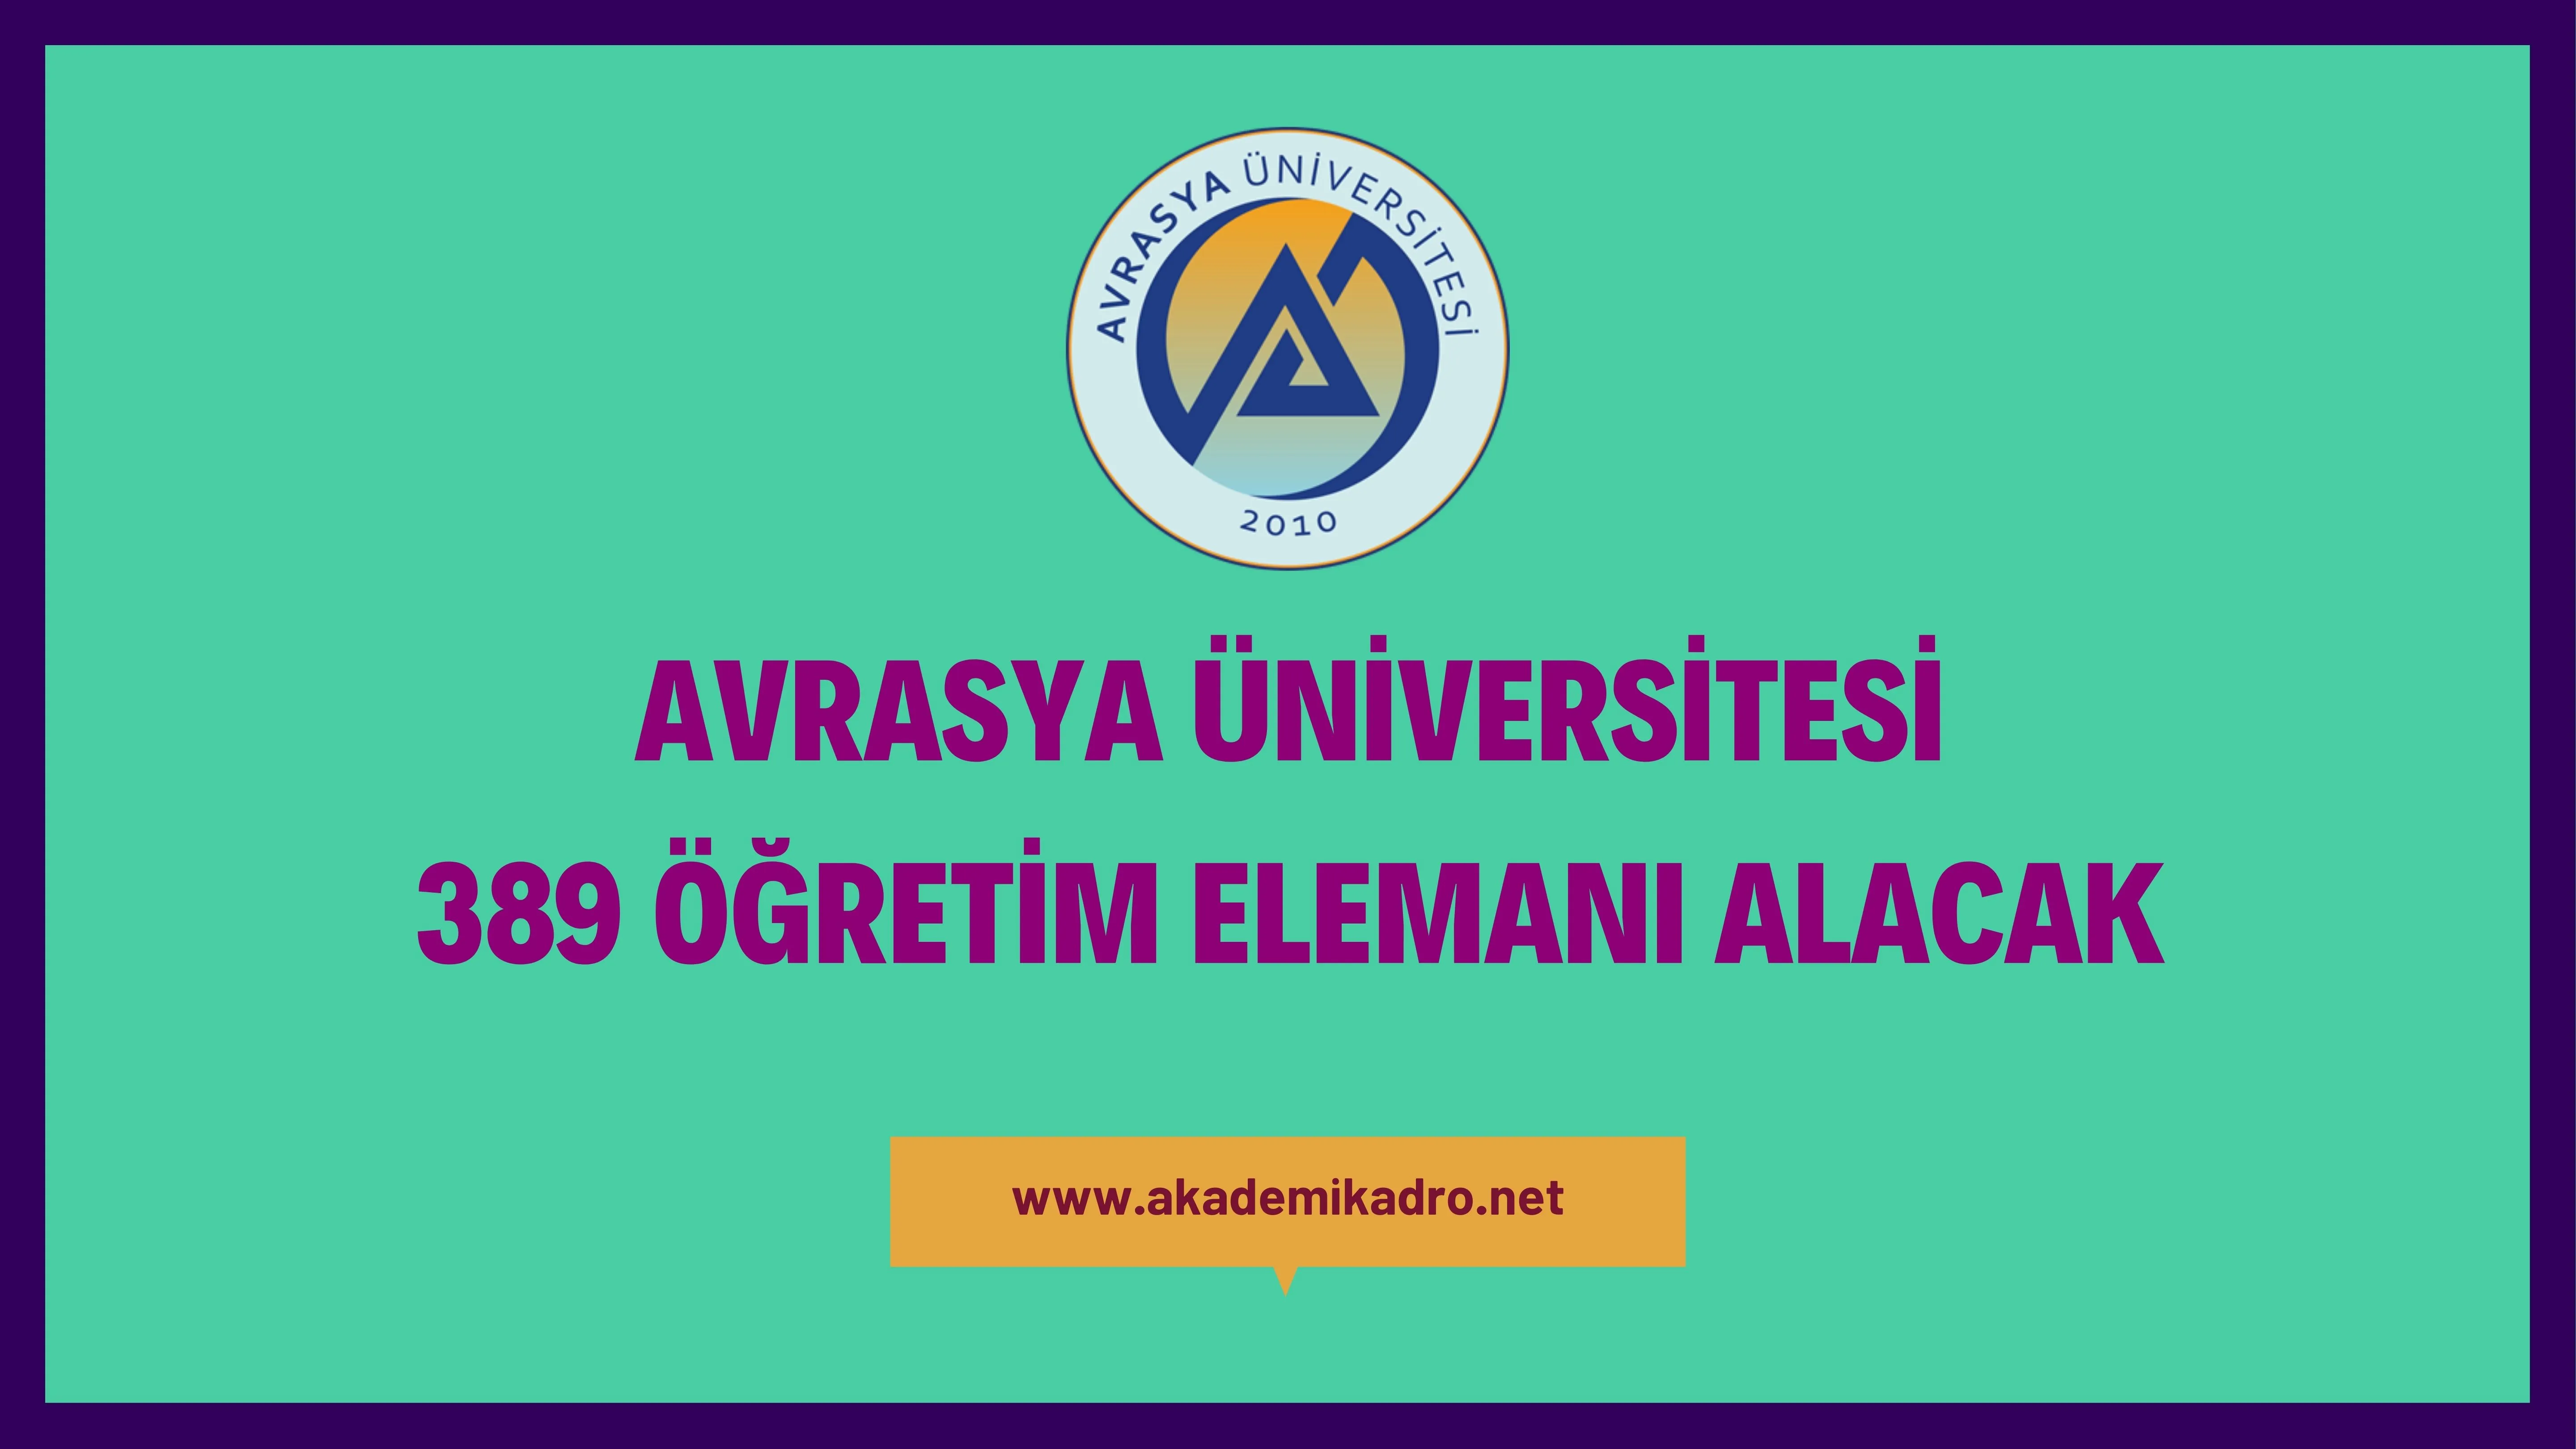 Avrasya Üniversitesi 30 Araştırma görevlisi, 76 Öğretim görevlisi ve 283 Öğretim üyesi olmak üzere 389 Öğretim elemanı alacak. Son başvuru tarihi 10 Haziran 2023.